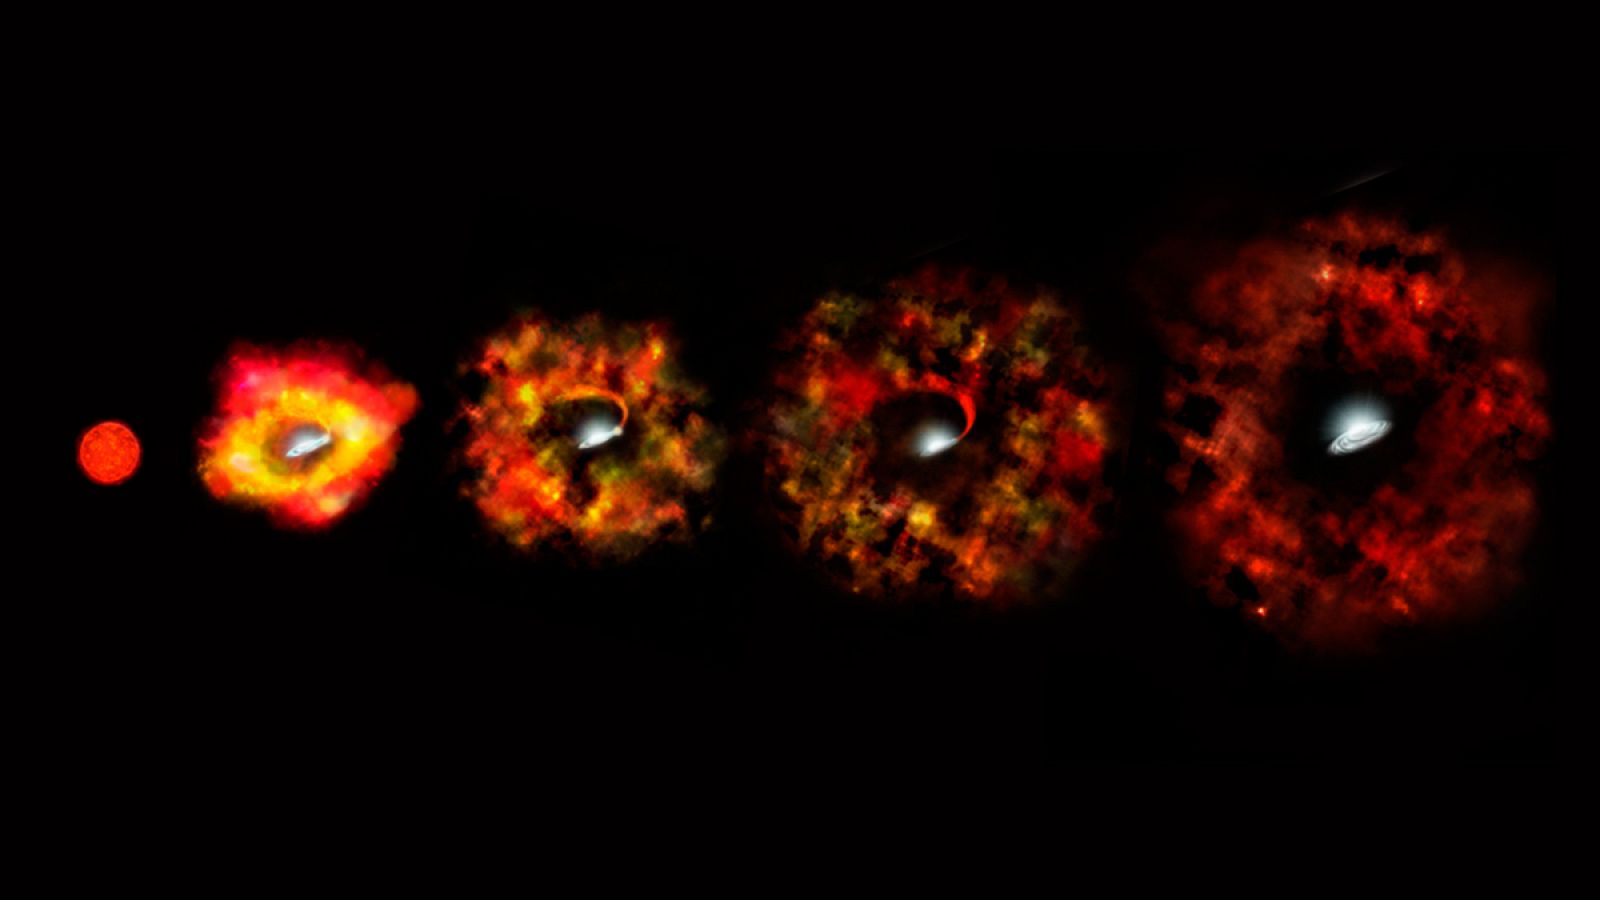 Etapas finales de la vida de una estrella supermasiva que fracasa en su explosión como supernova y en su lugar implosiona para formar un agujero negro